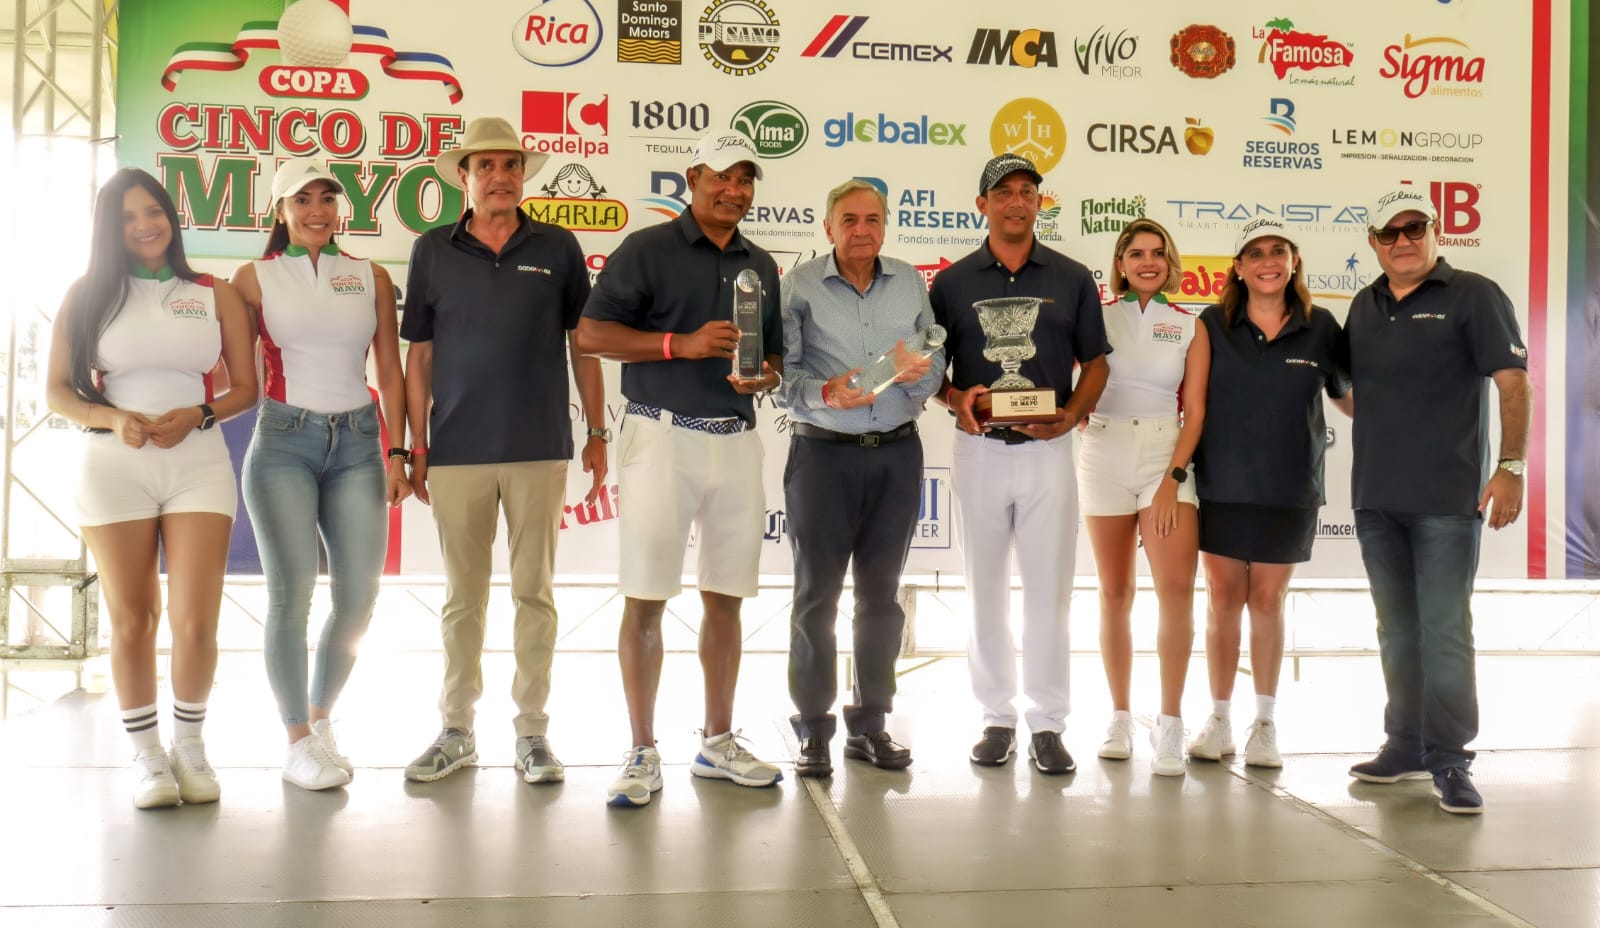 César y Freddy Rodríguez ganan el torneo de golf  Copa 5 de Mayo